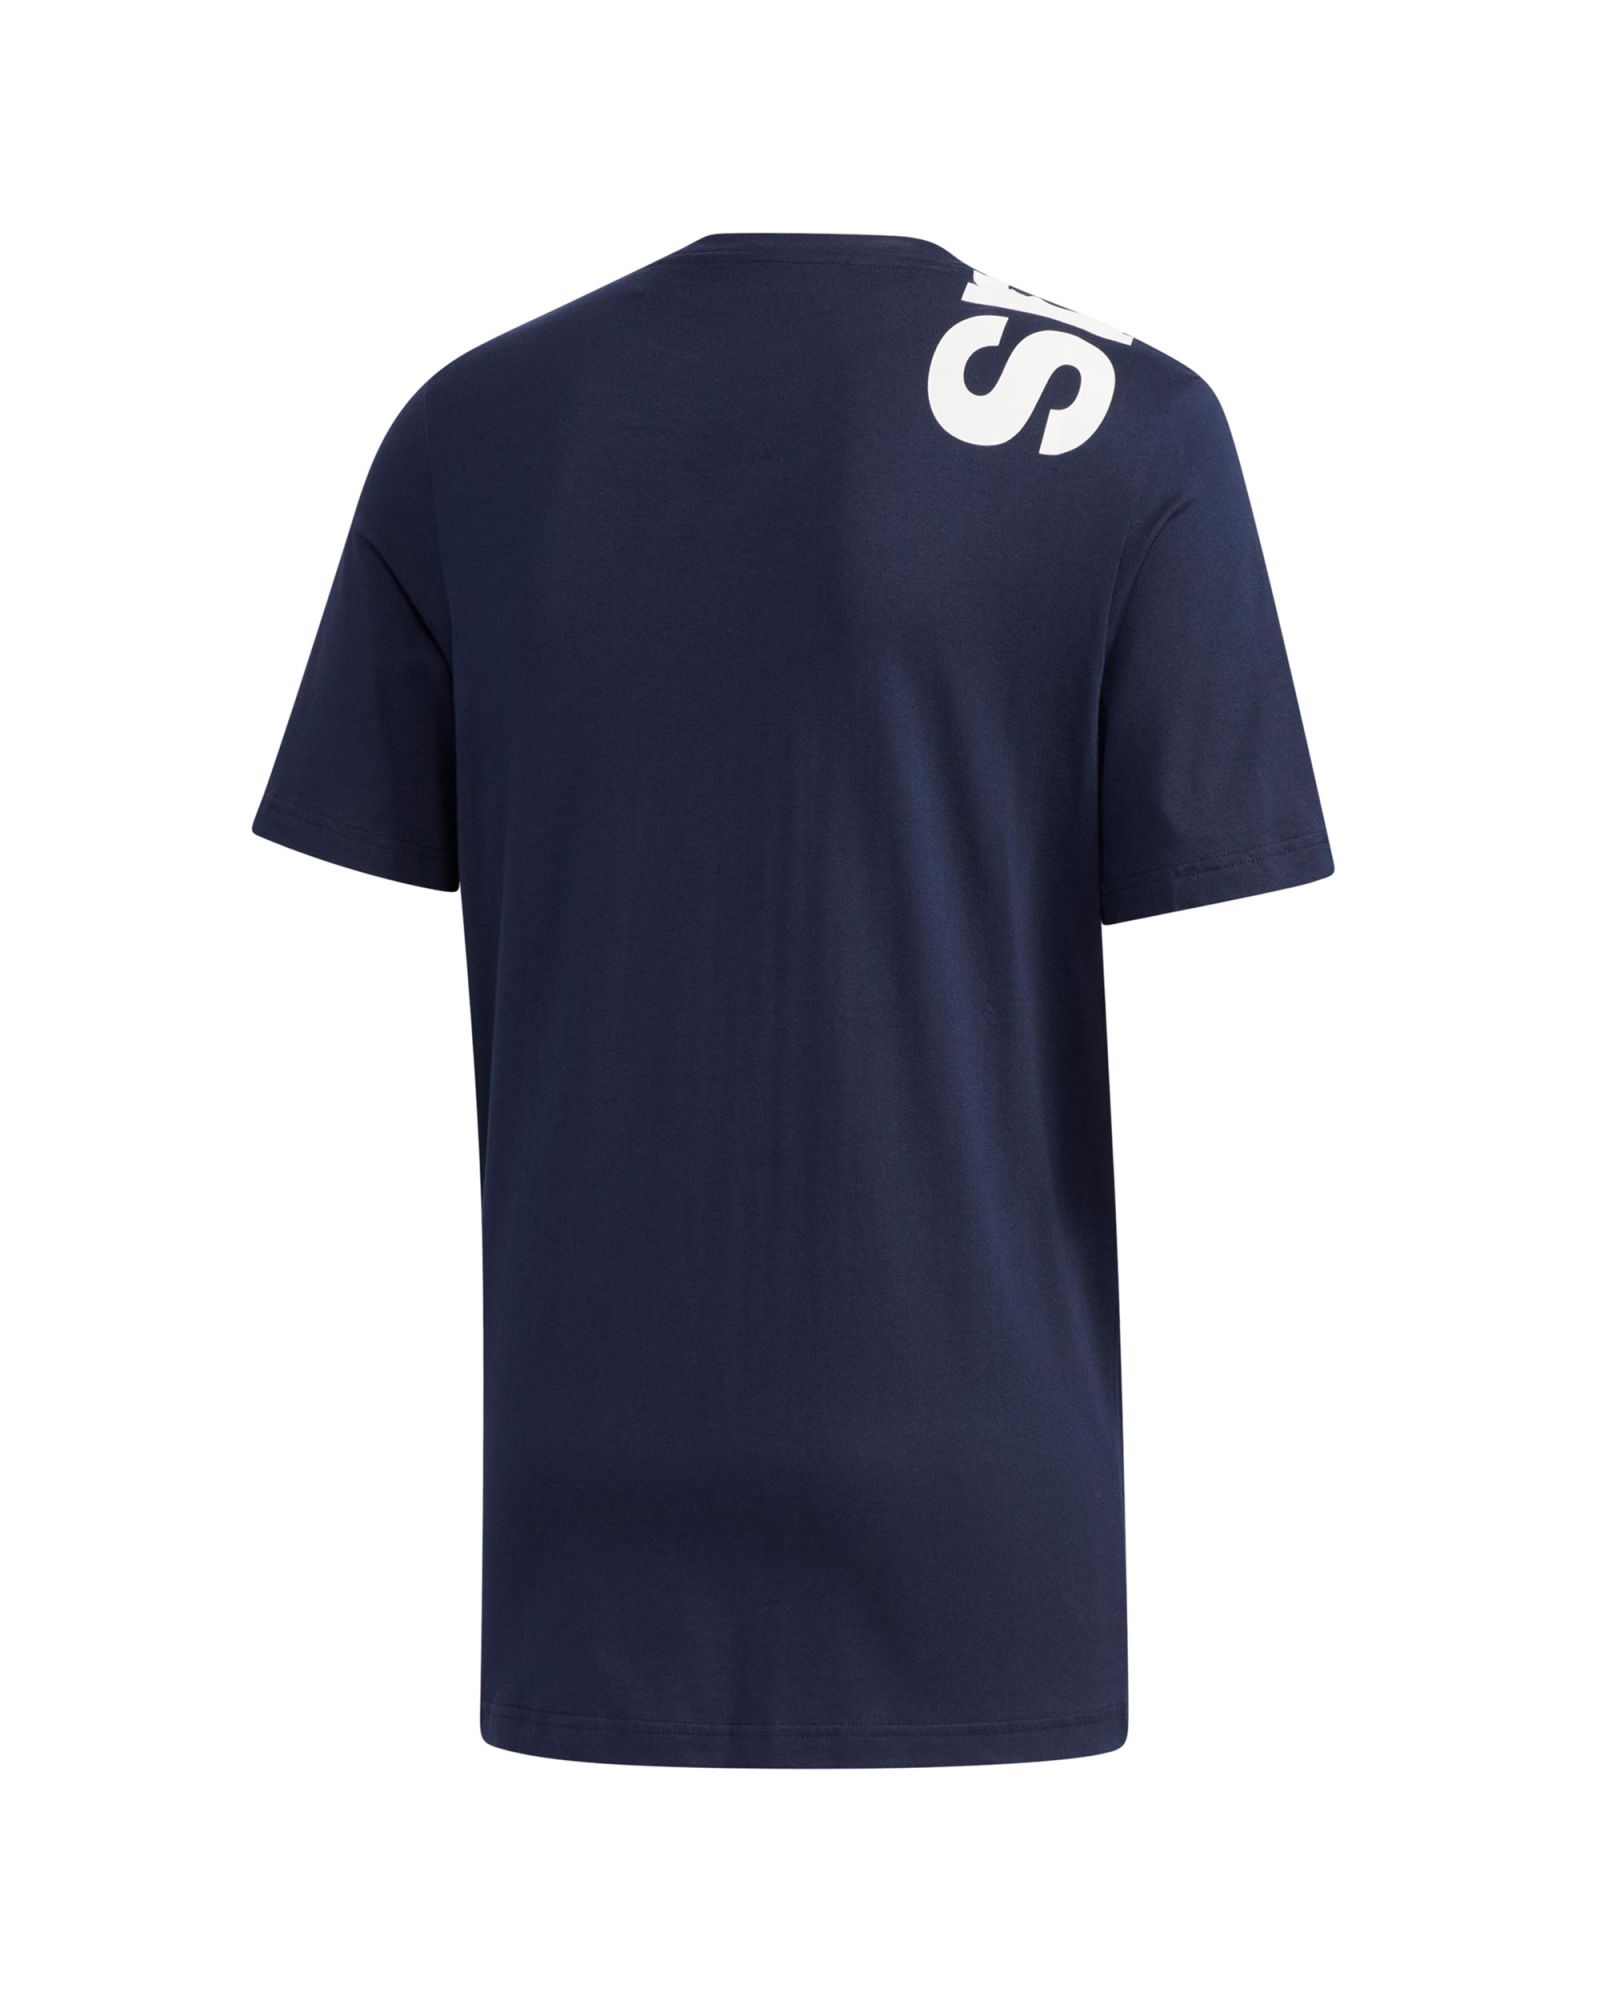 Camiseta de Paseo New Authentic Marino - Fútbol Factory